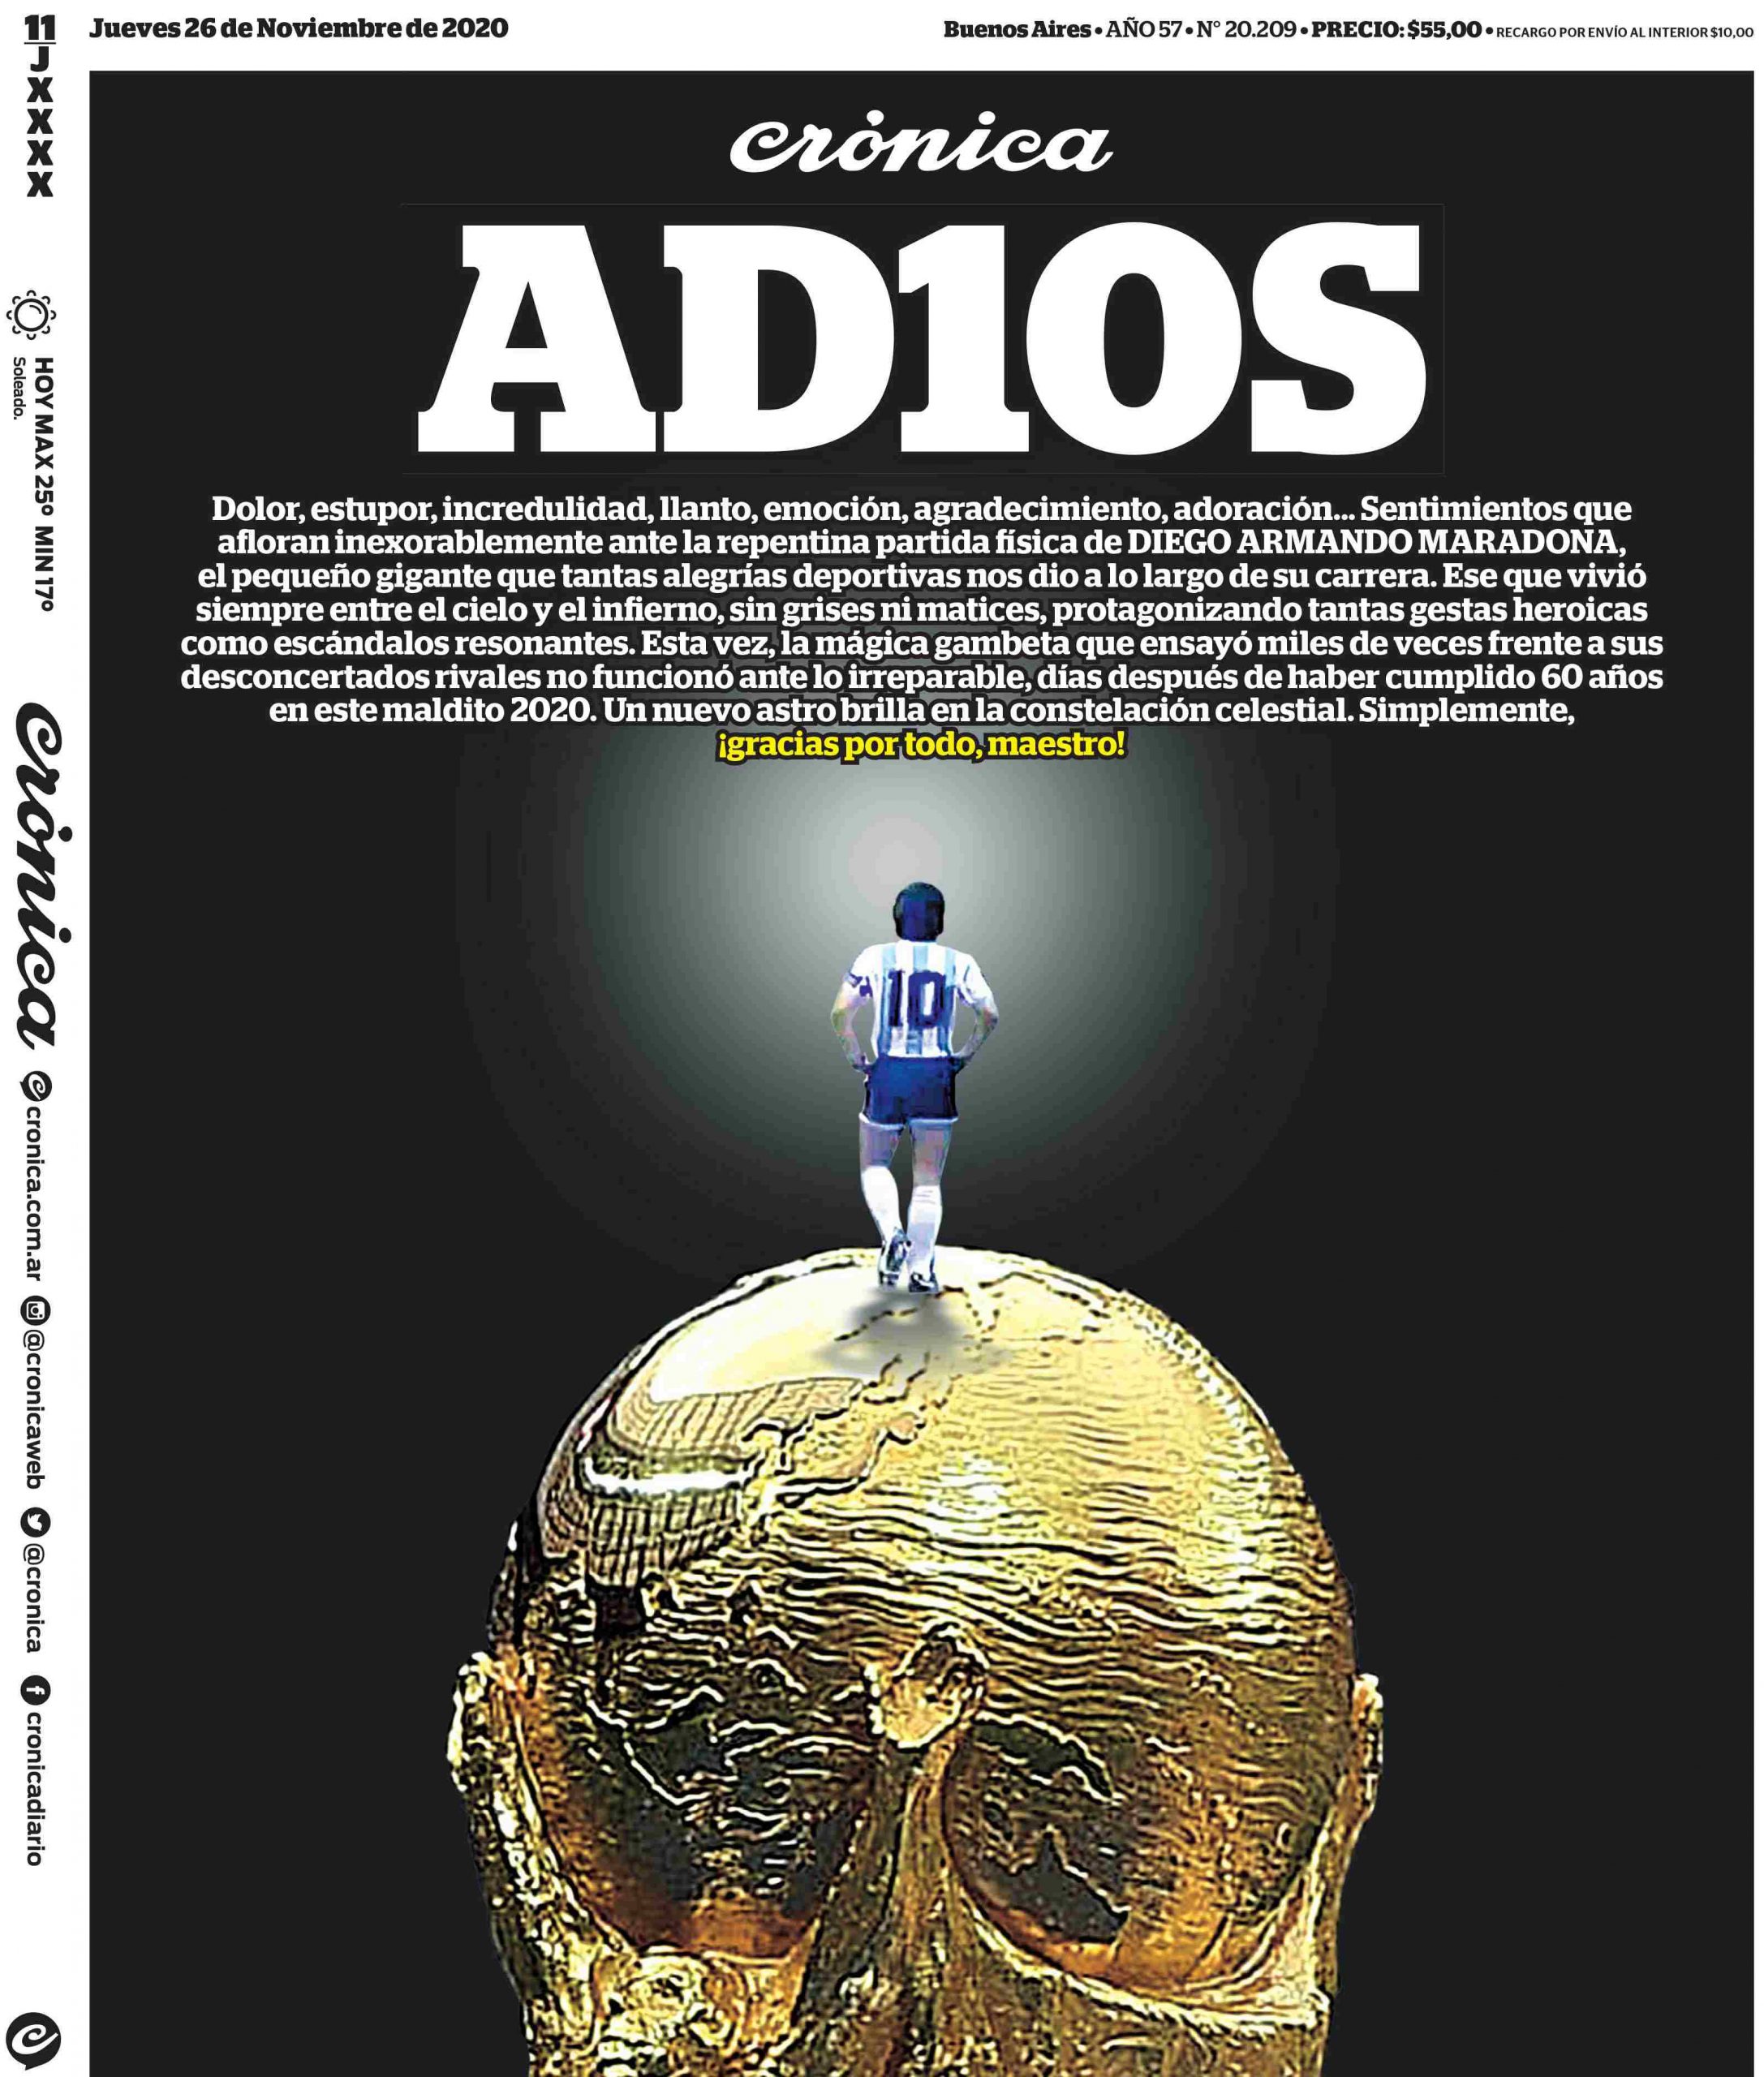 Maradona: Las portadas de todo el planeta homenajean a Diego Armando  Maradona... menos una de mal gusto